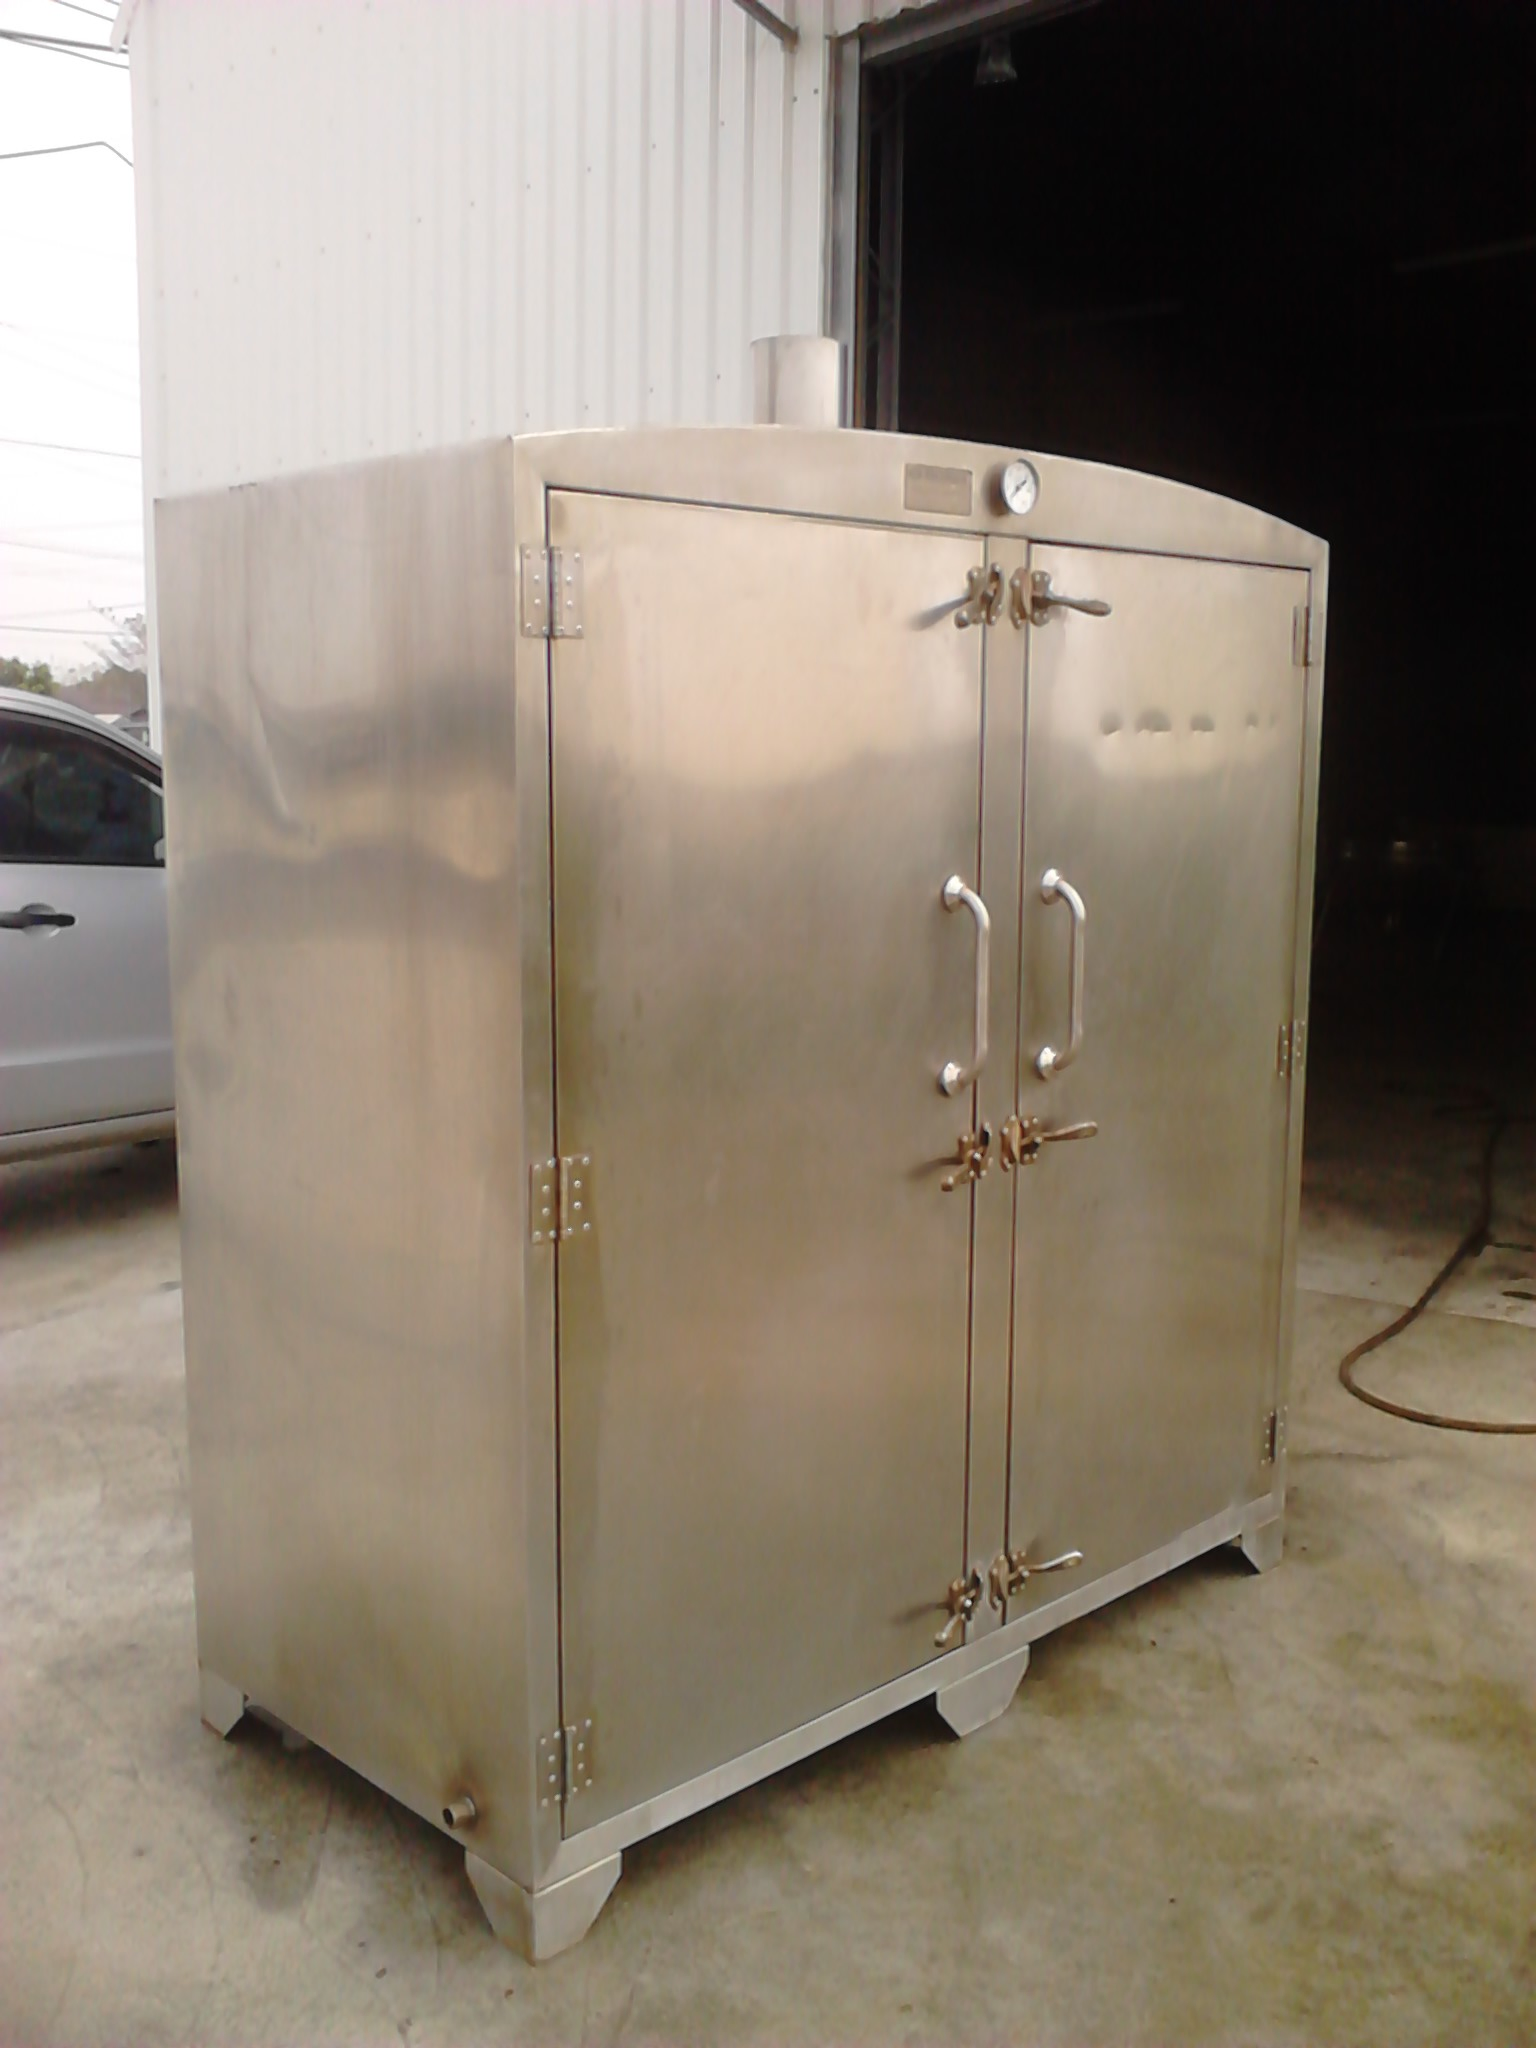 蒸箱 大型蒸箱 蒸飯櫃 滅菌櫃 消毒櫃 蒸氣櫃